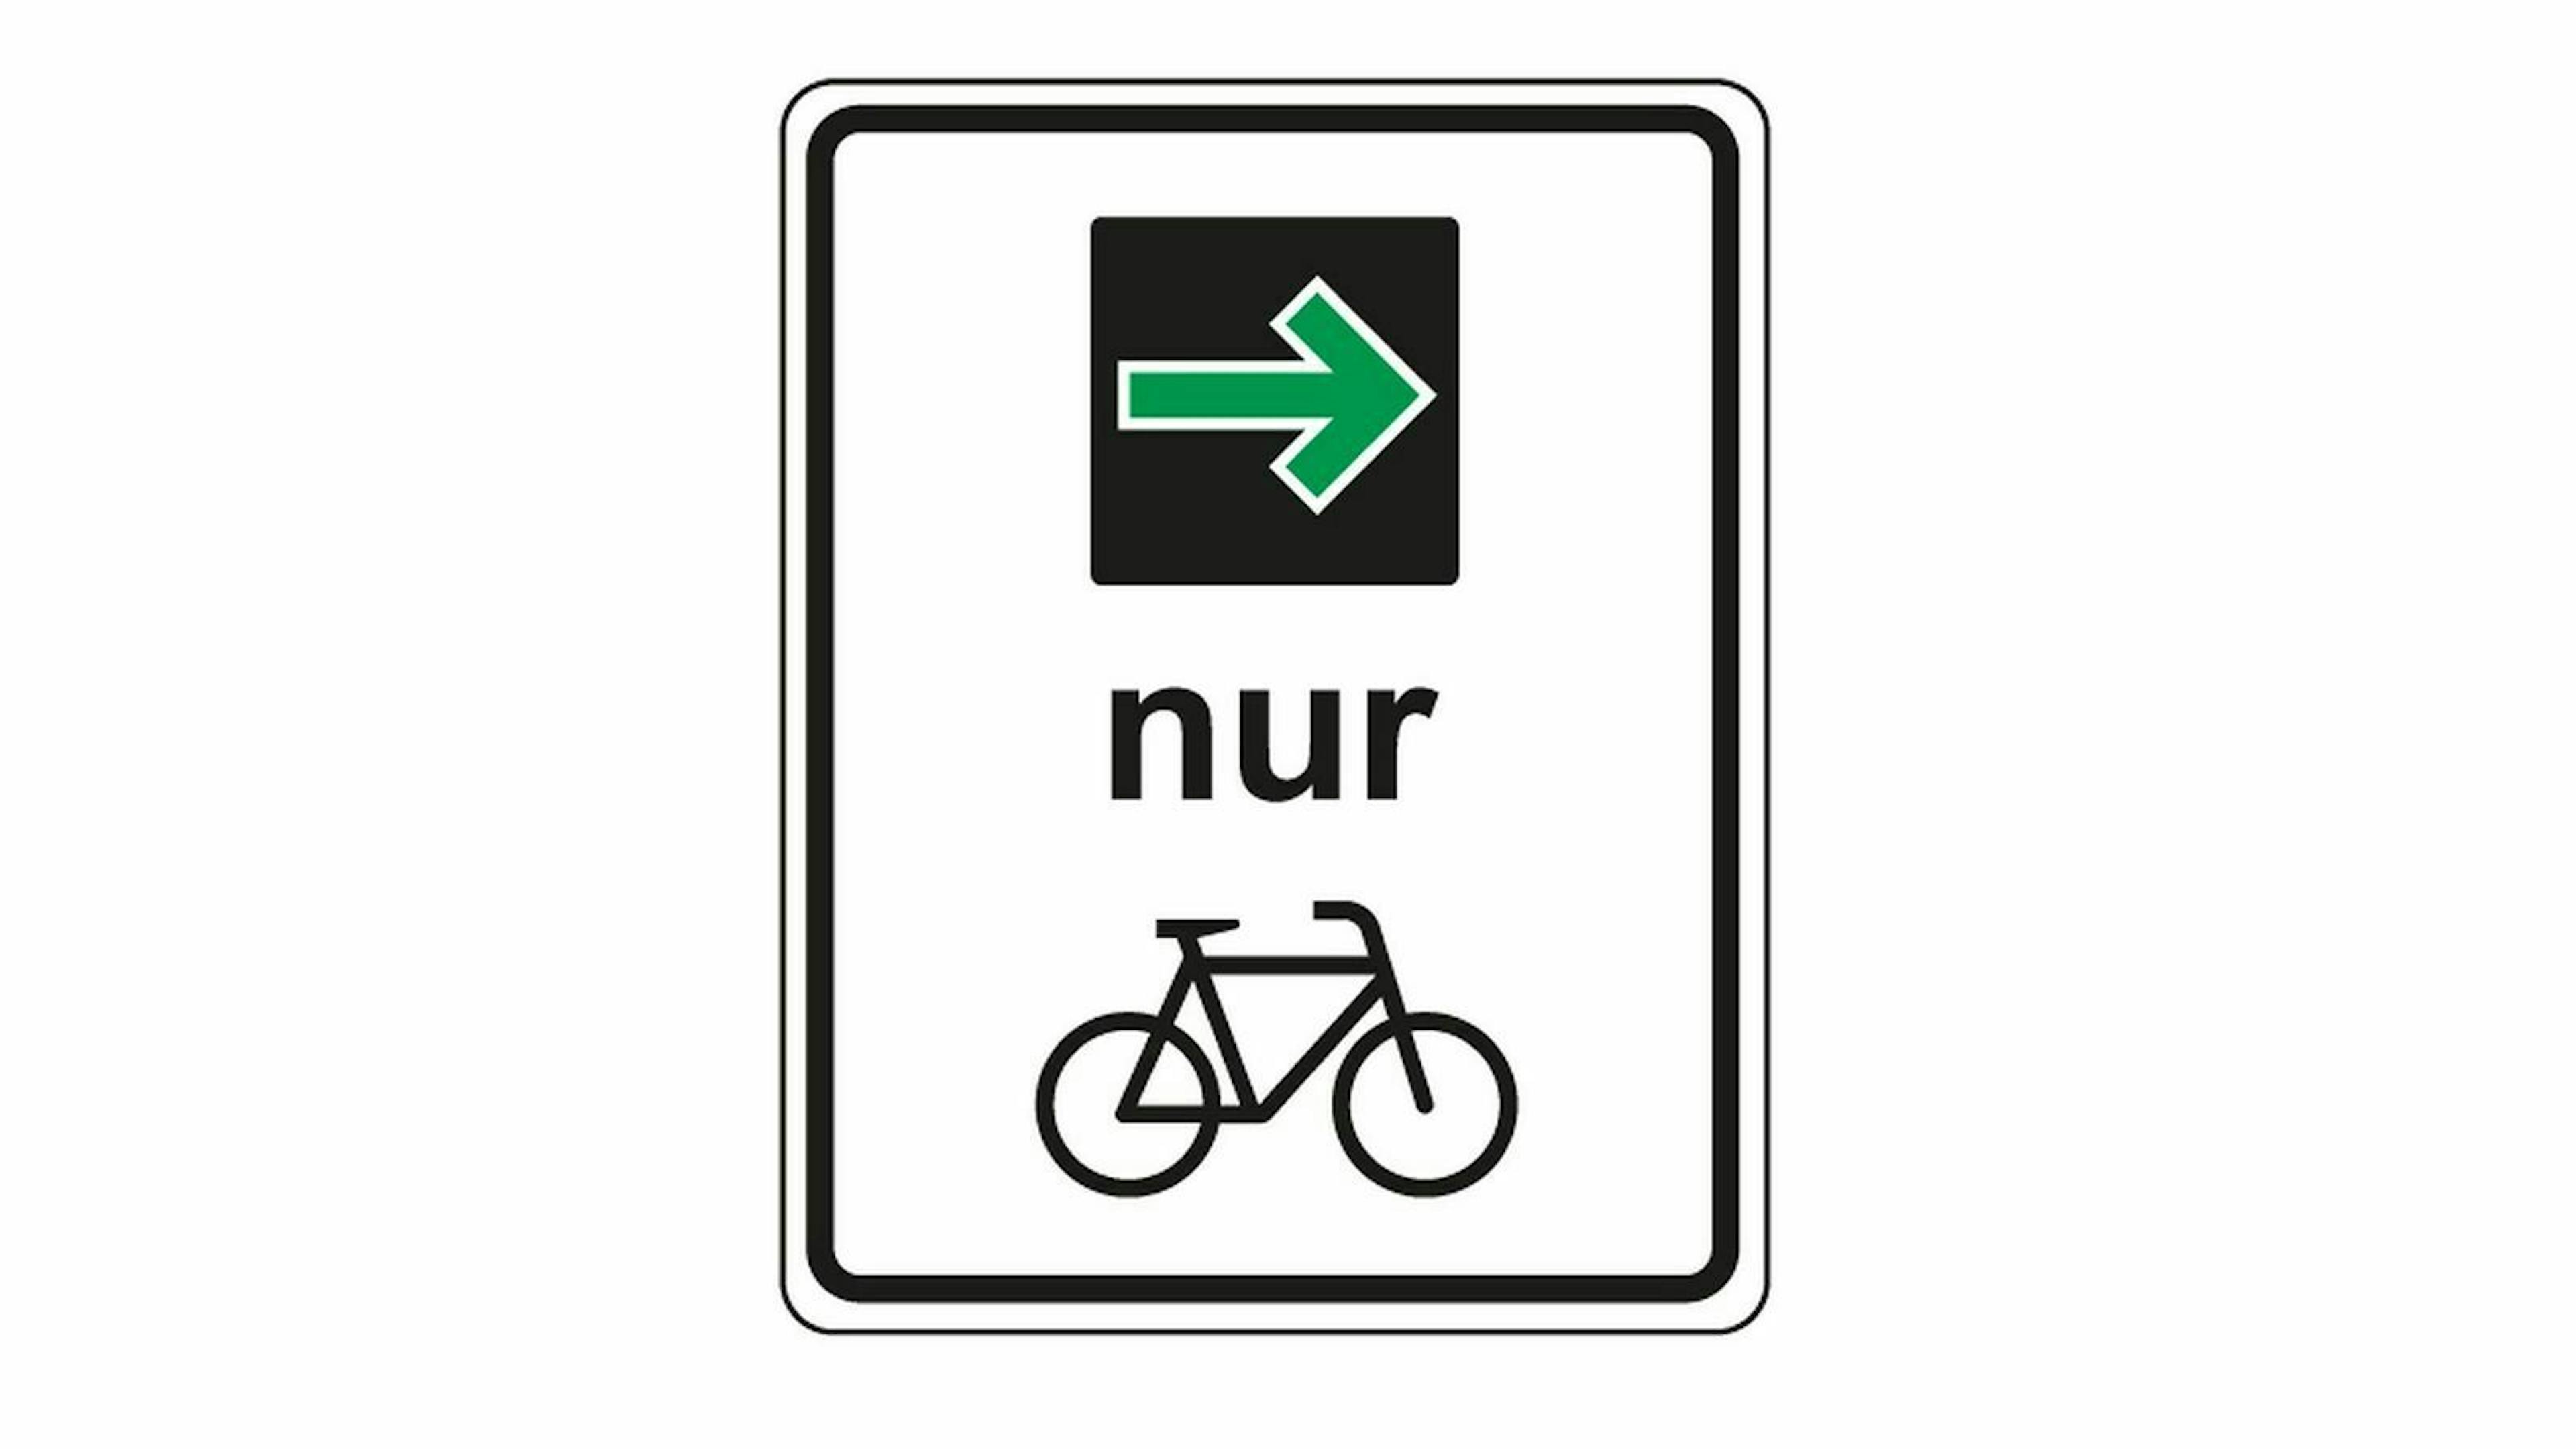 Zu sehen ist ein Verkehrschild, ab 2020 gültig. Ein grüner Pfeil nur für Radfahrer. 